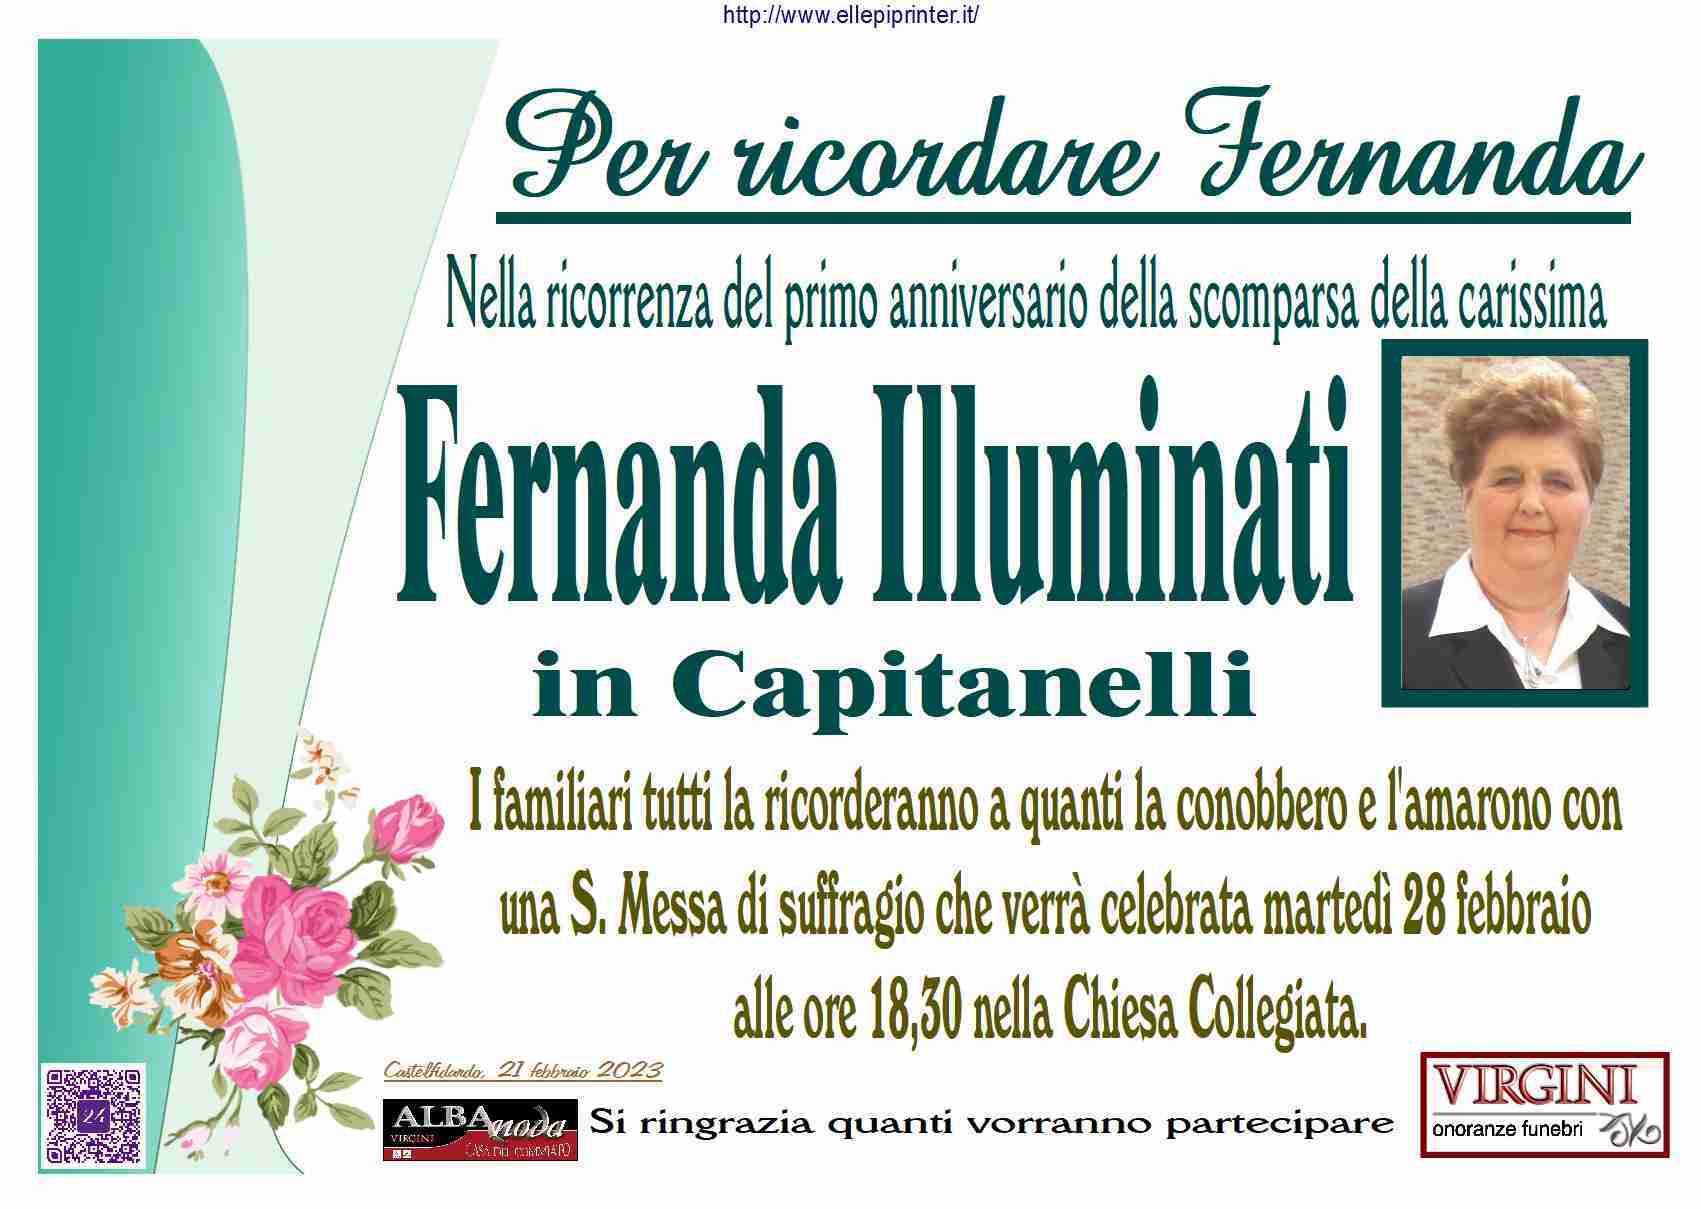 Fernanda Illuminati